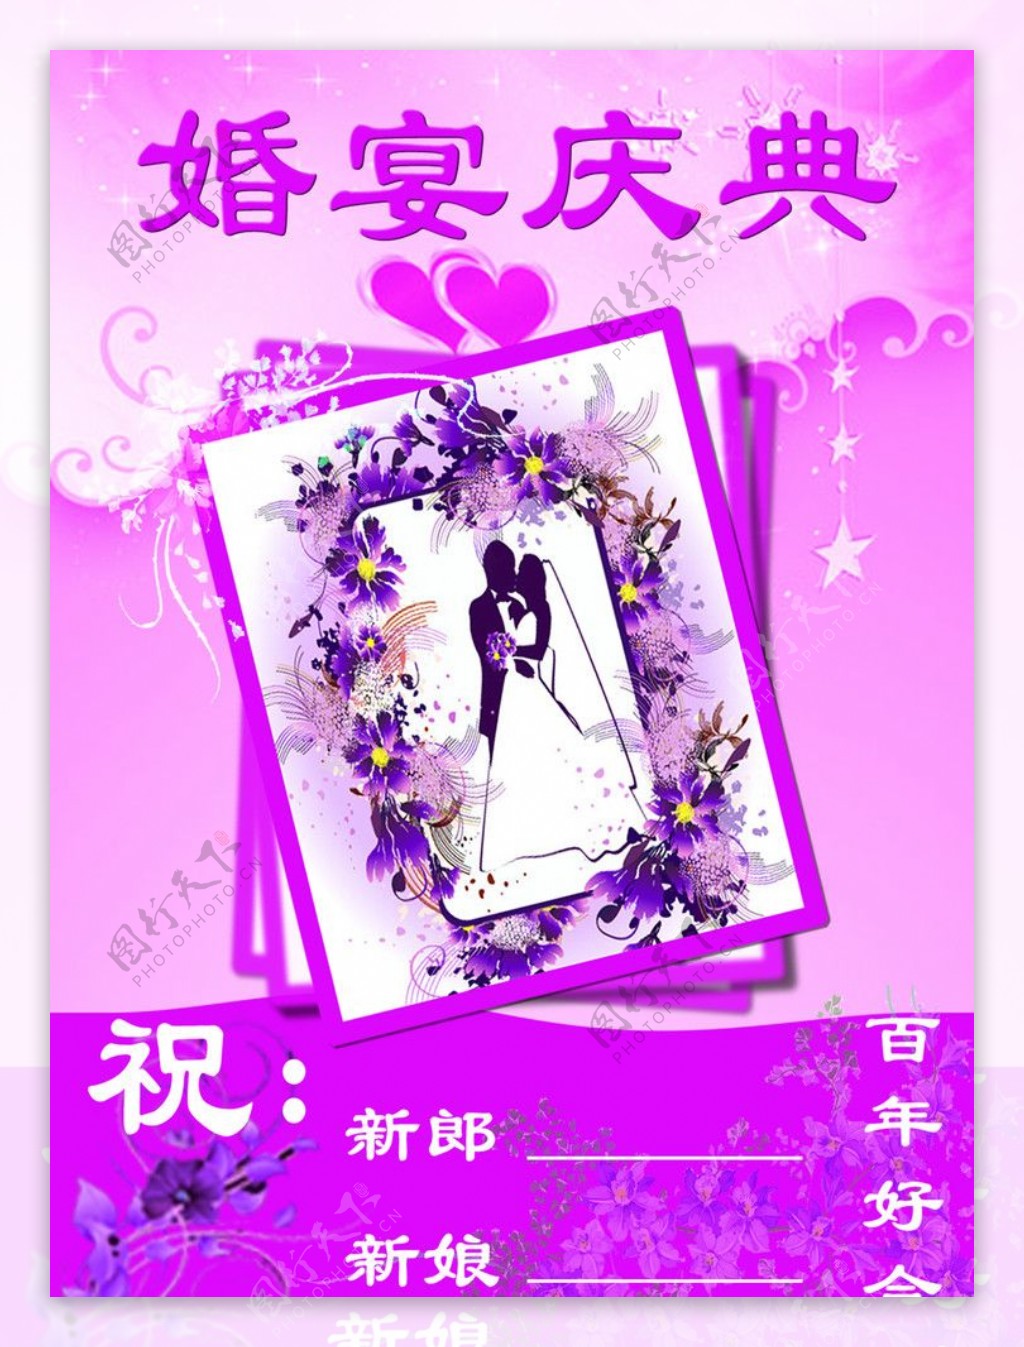 紫色婚宴庆典图片